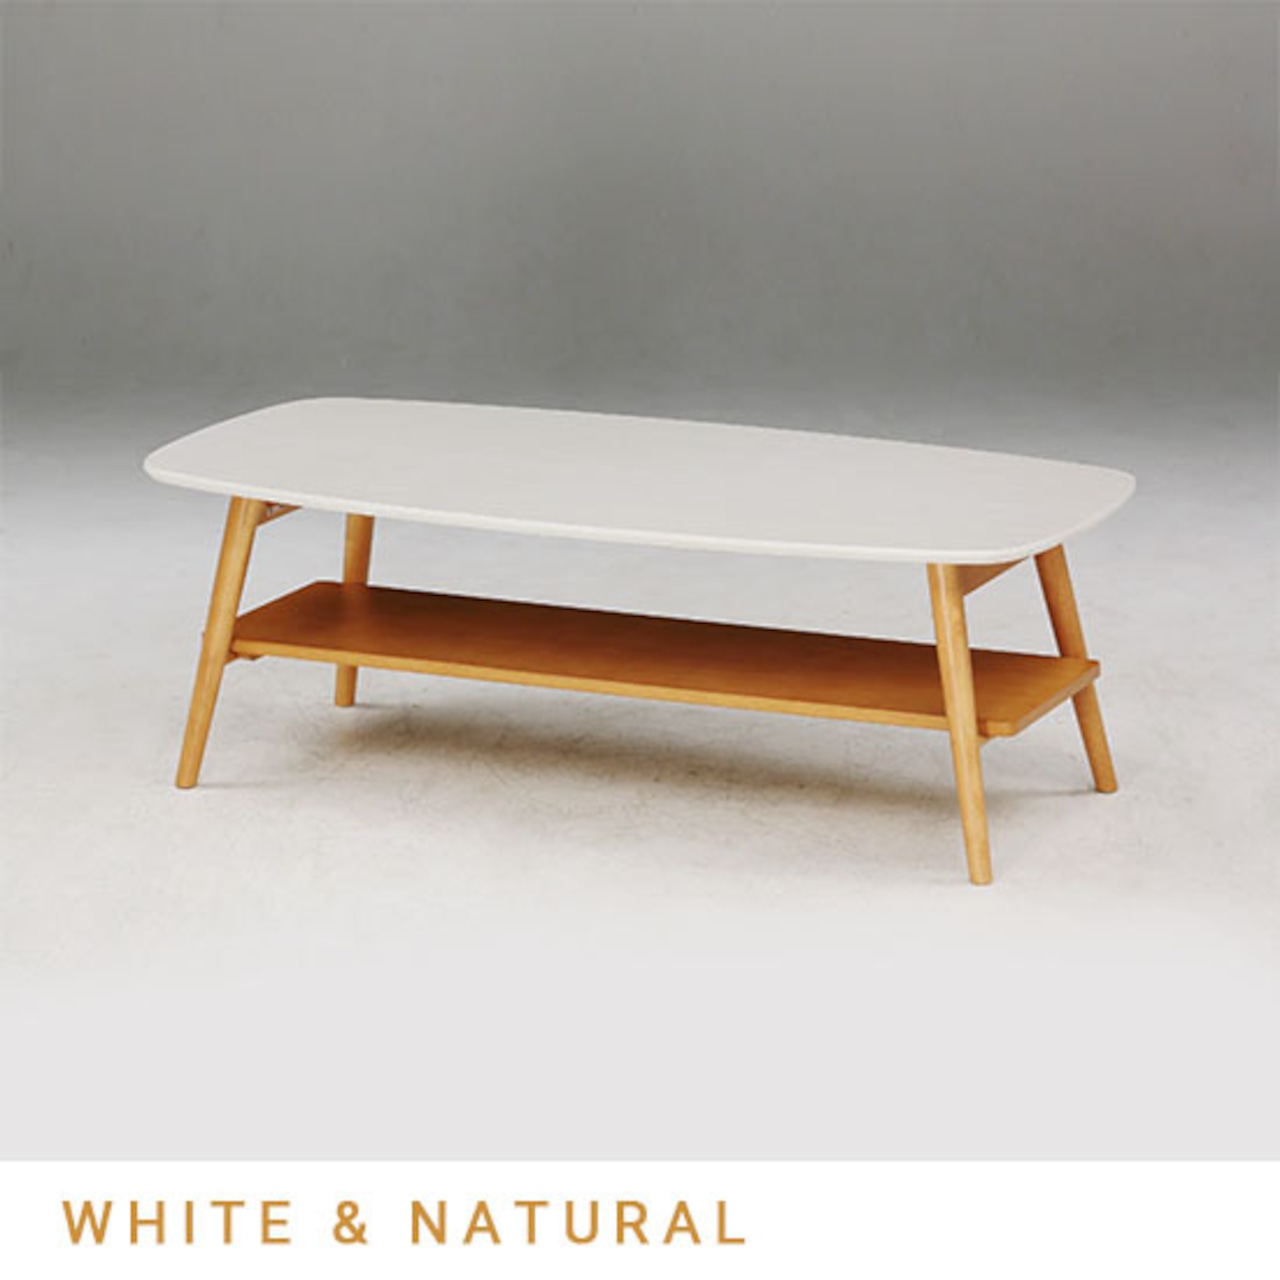 【幅120】センターテーブル テーブル 机 ローテーブル 折り畳み式 (全2色)